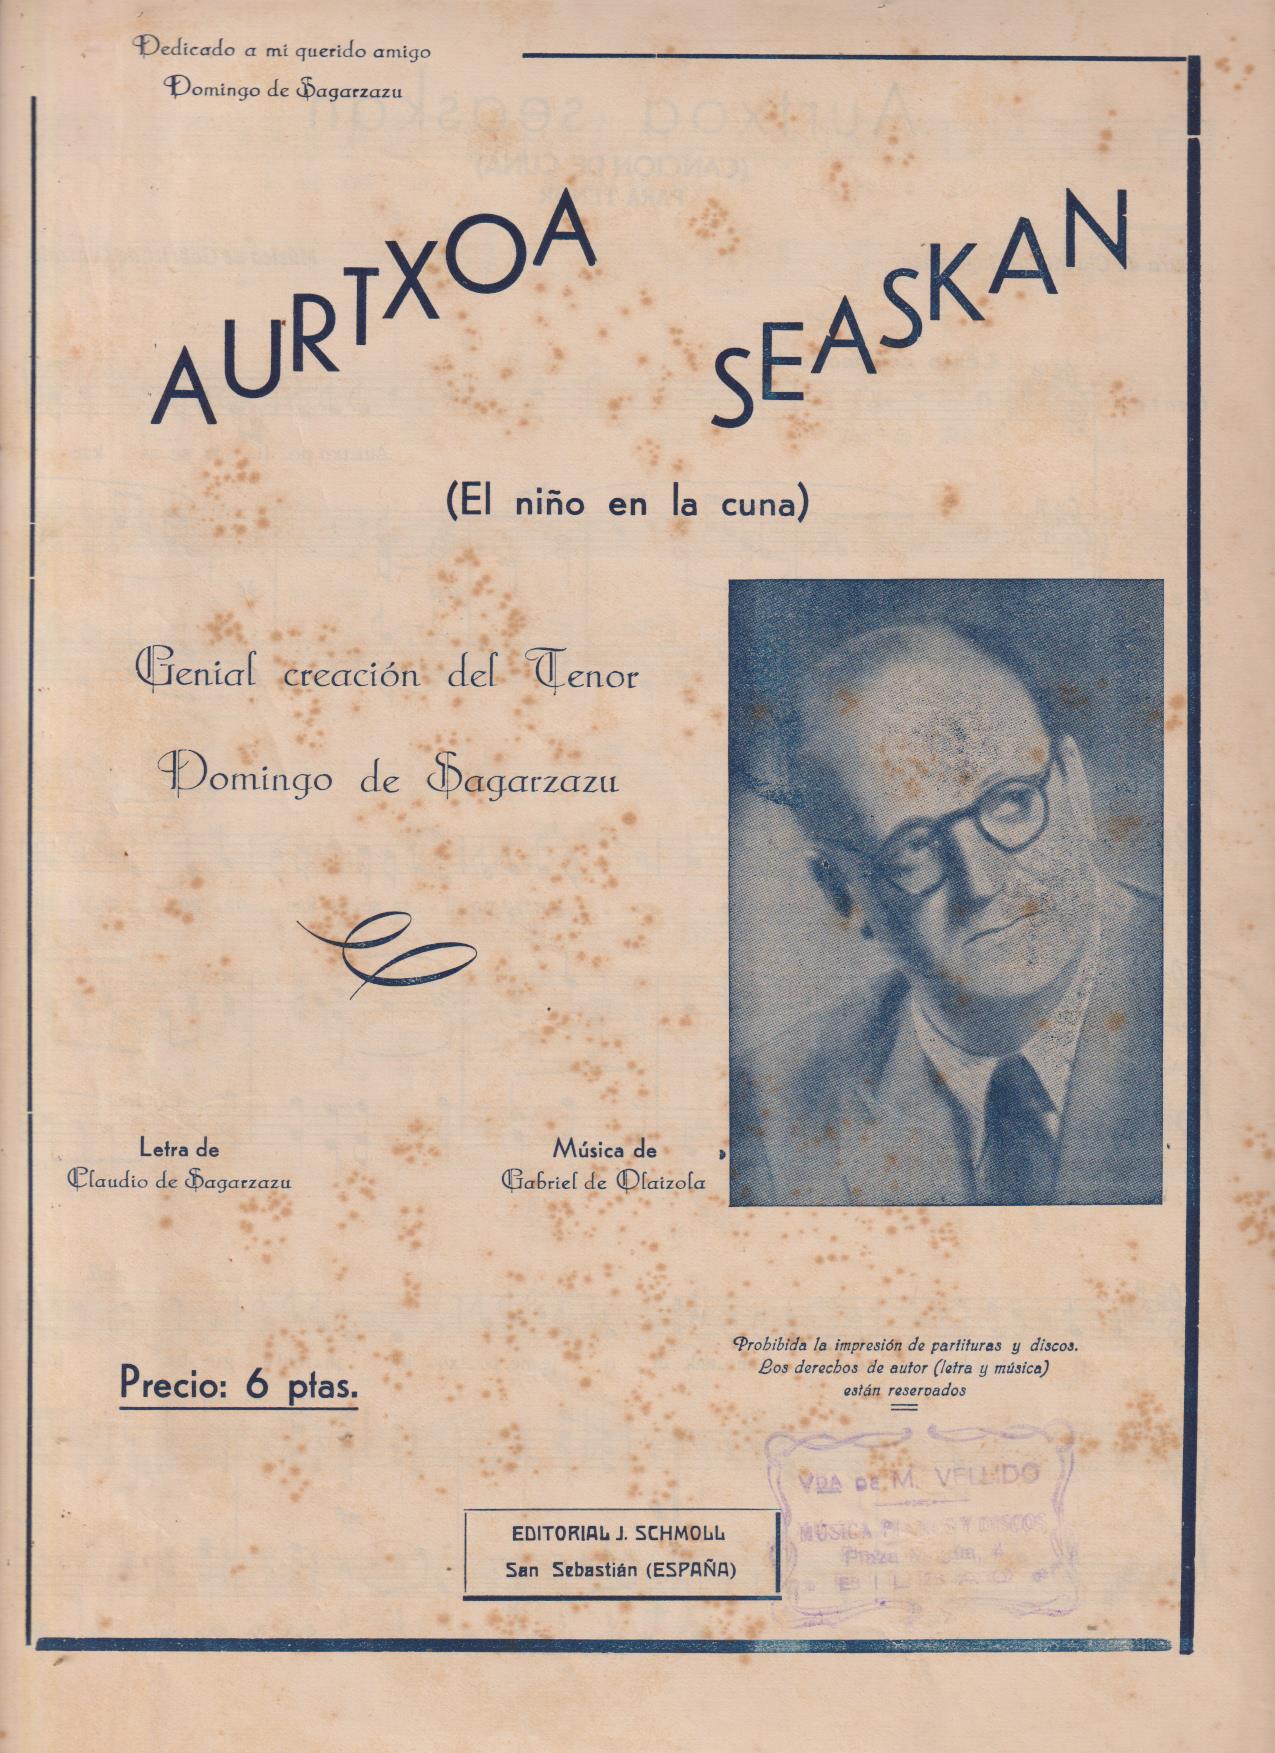 Aurtxoa Seaskan (El niño de la cuna) Edit. Schmoll (34x24) 3 páginas